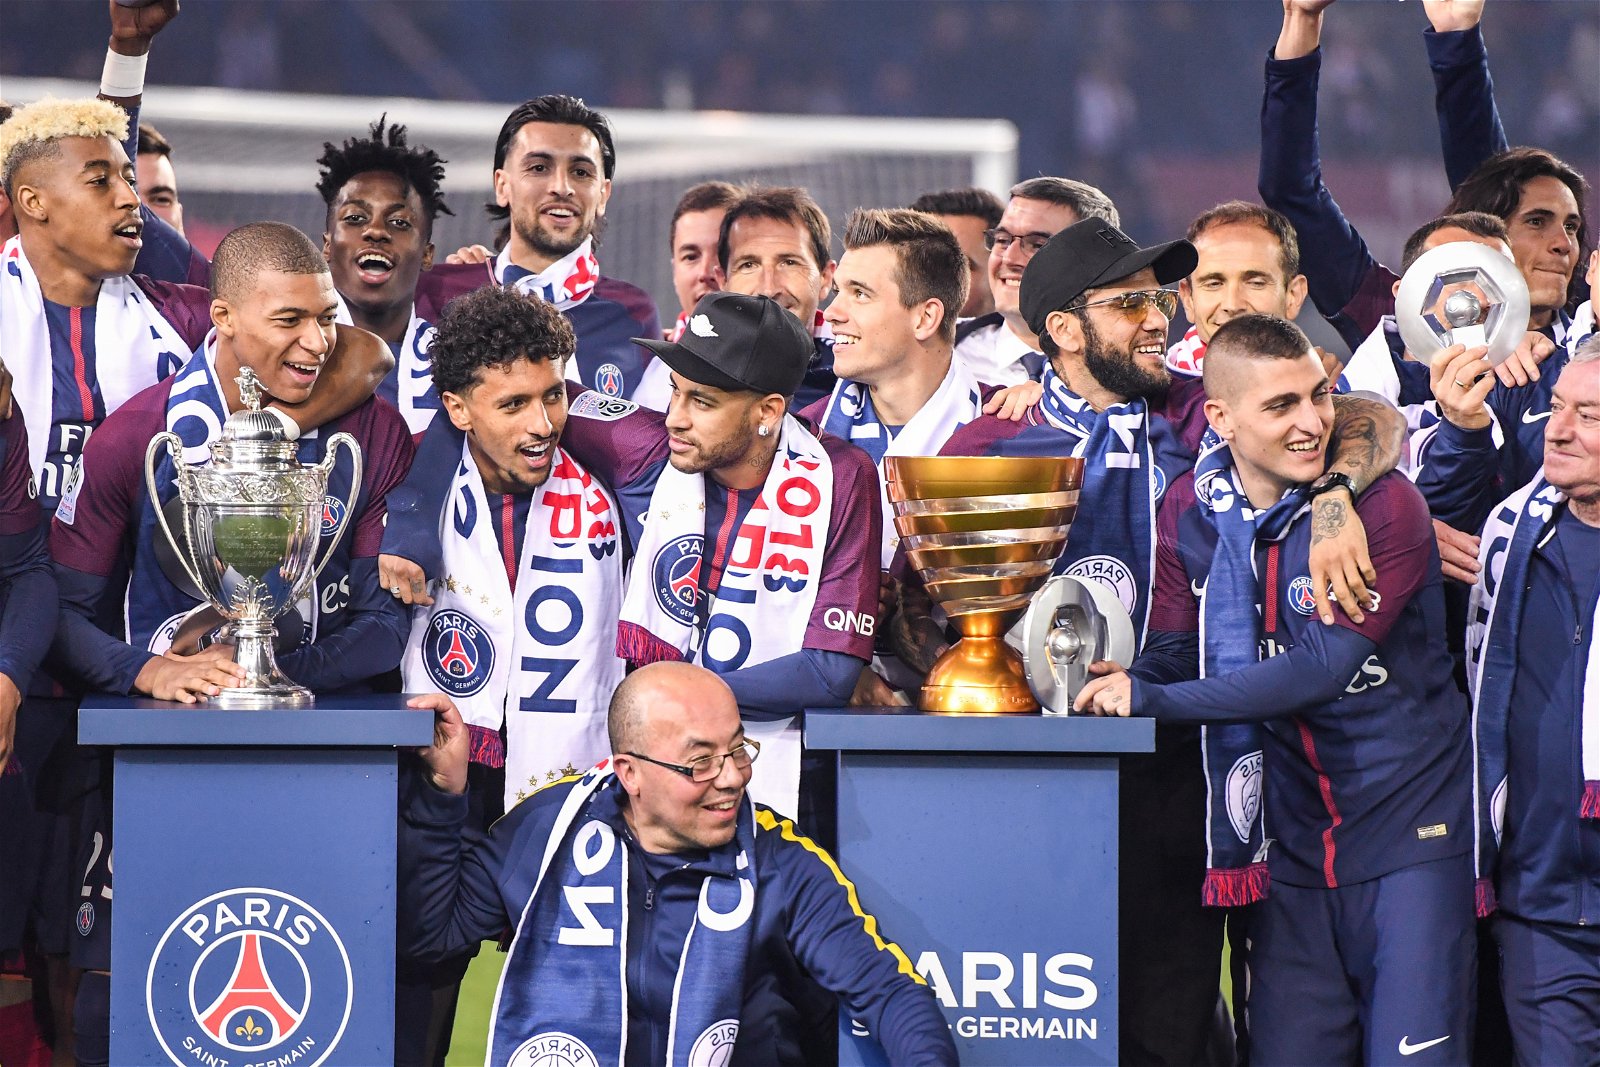 (Vòng 28 Ligue 1) LOSC Lille - Saint - Etienne: Tin tức trước trận, dự đoán trận đấu